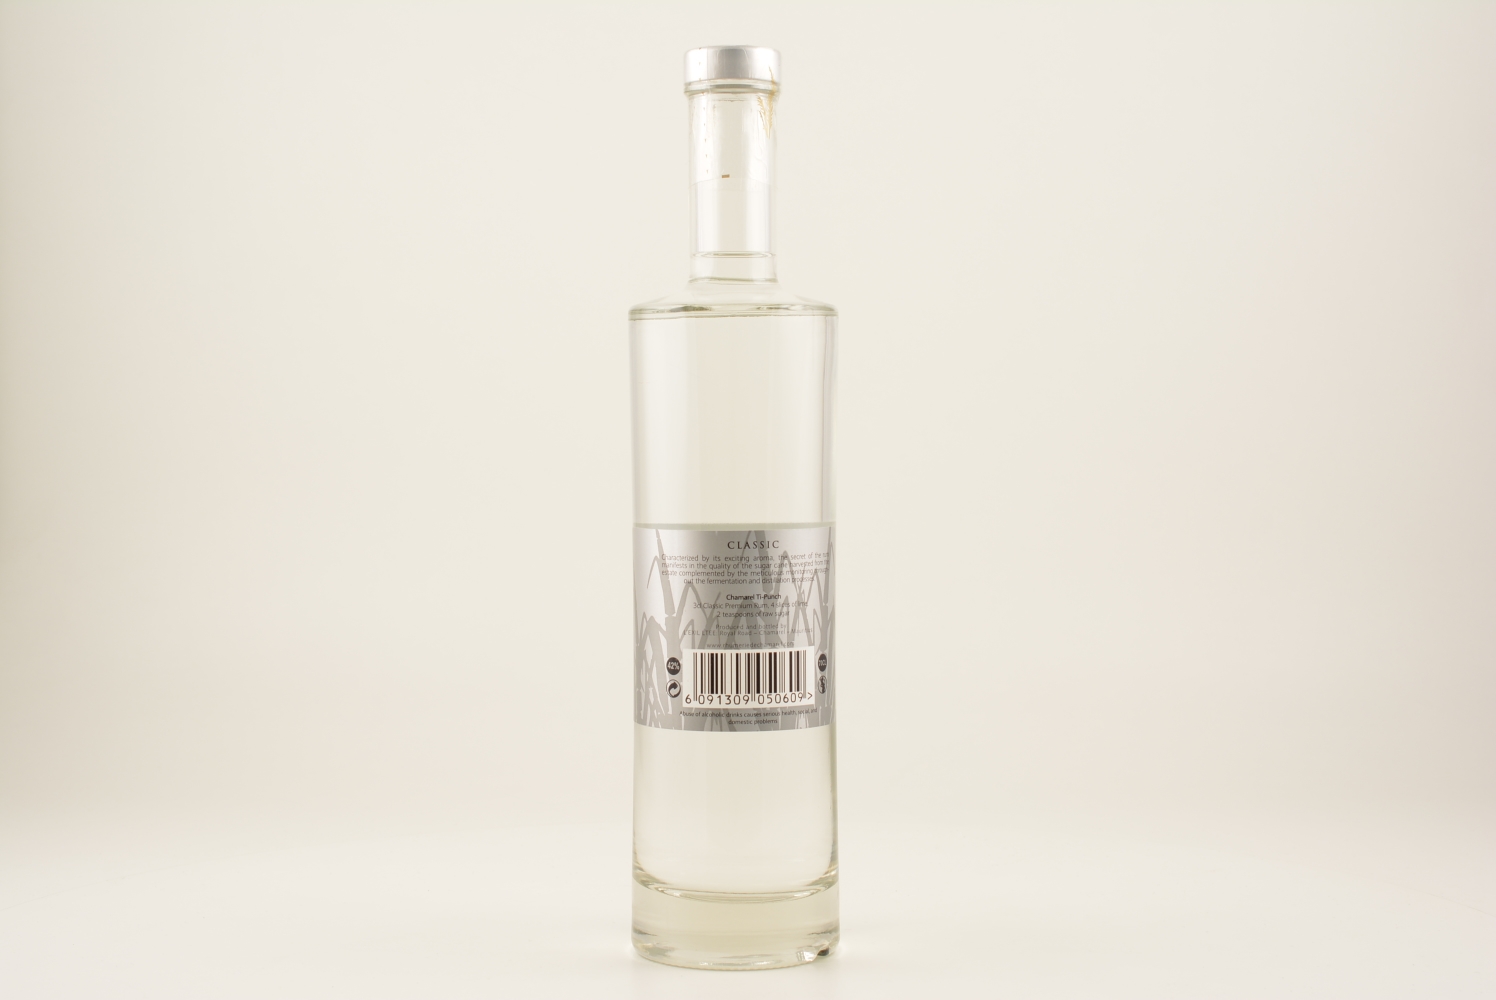 Chamarel Premium White Rum 42% 0,7l